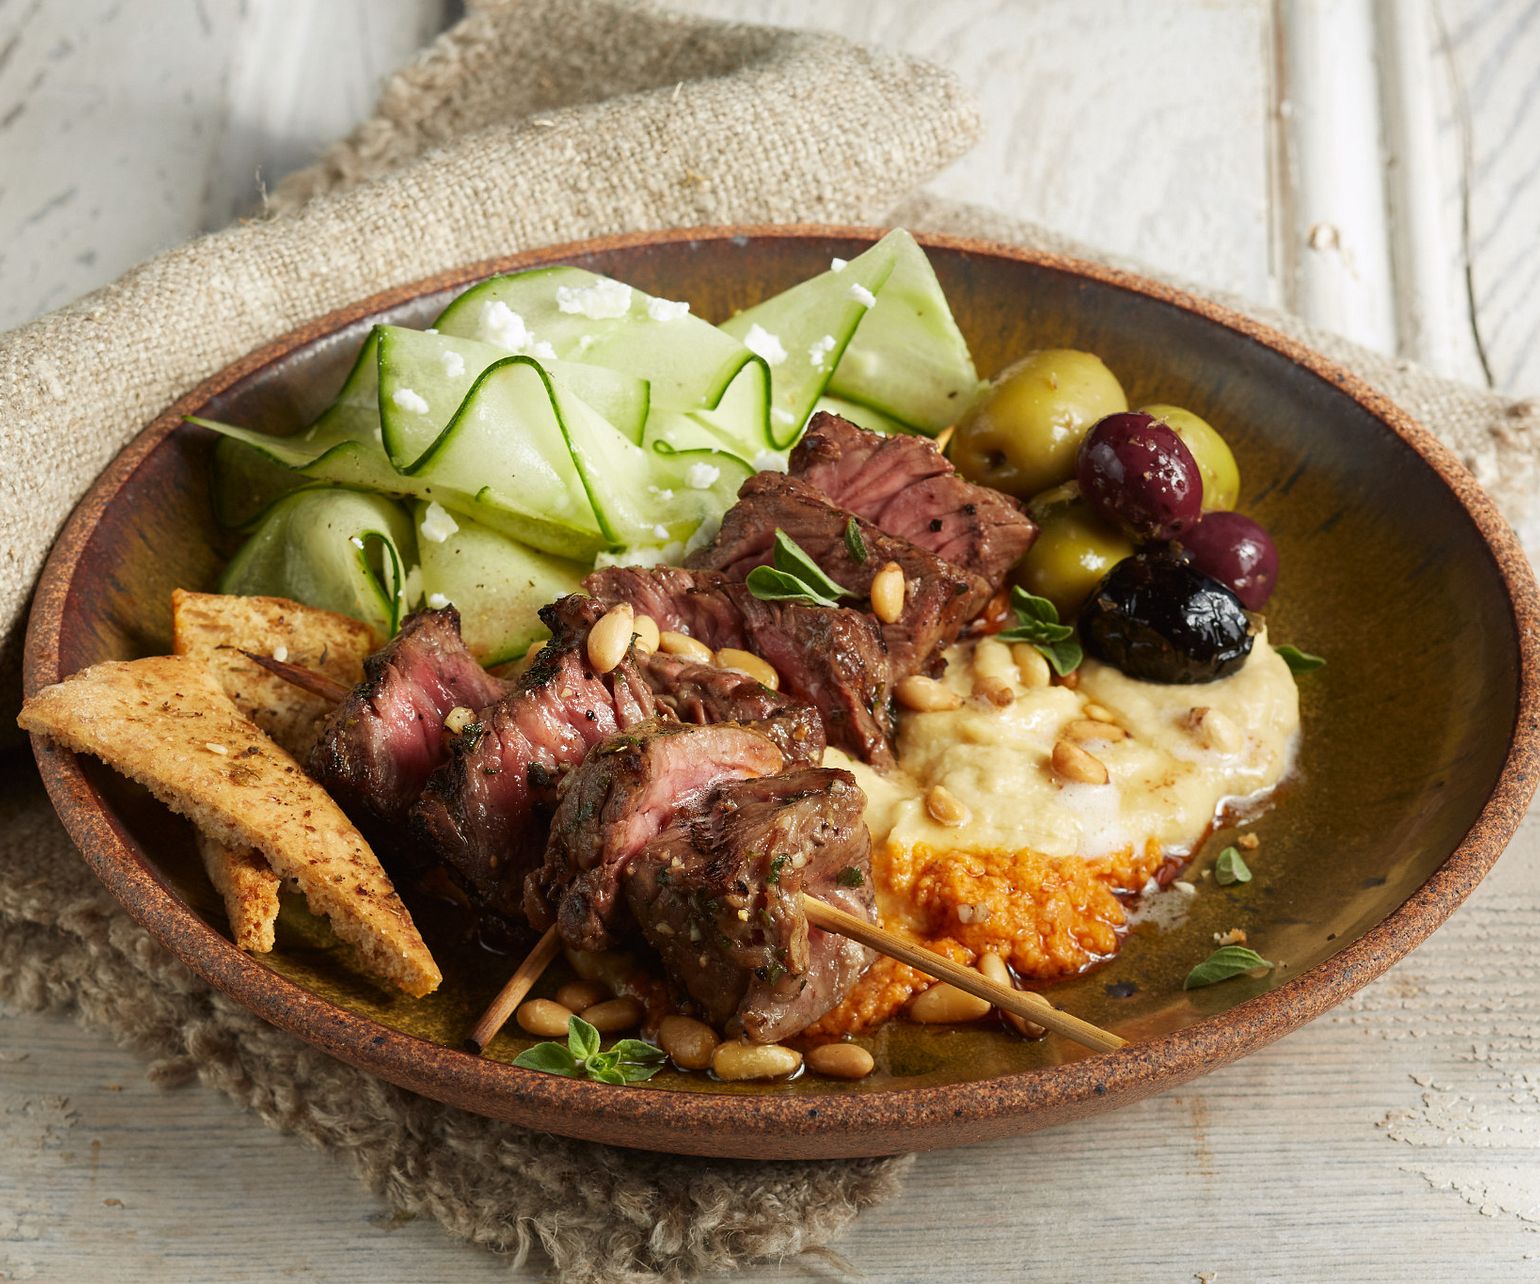 Greek Beef Steak and Hummus Plate